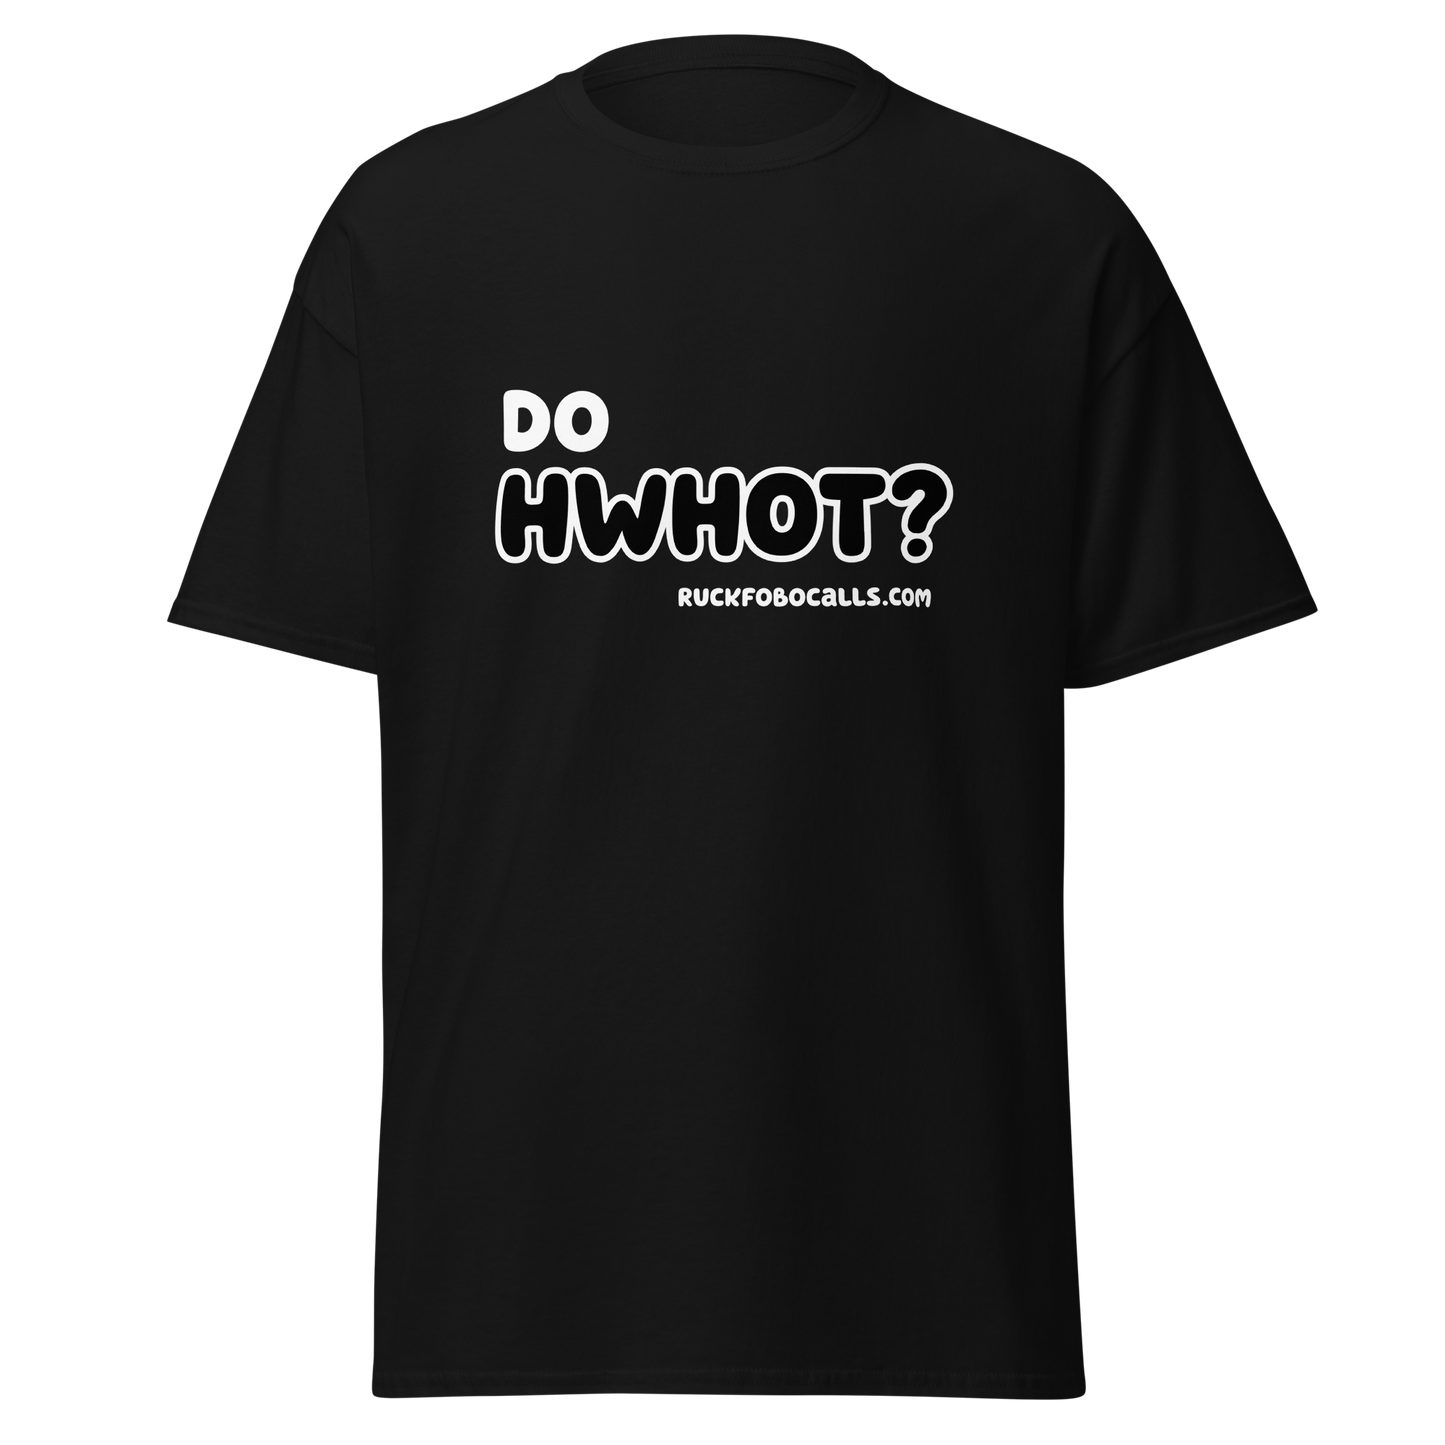 Do HWHOT? T-Shirt